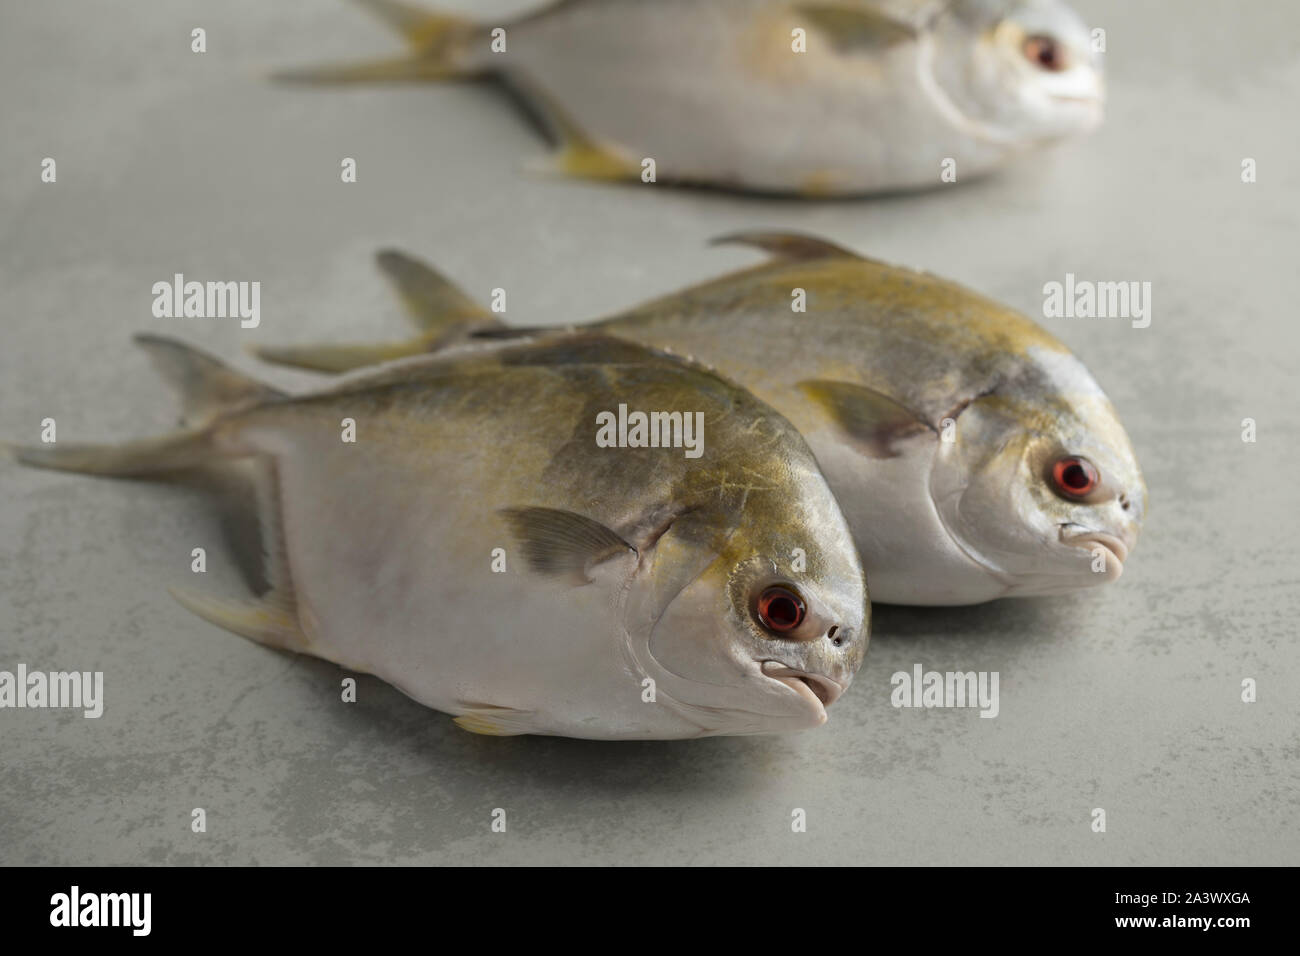 Frisch gefangenen Roh golden butterfische Fische oder Strahlen Brassen Fisch Stockfoto